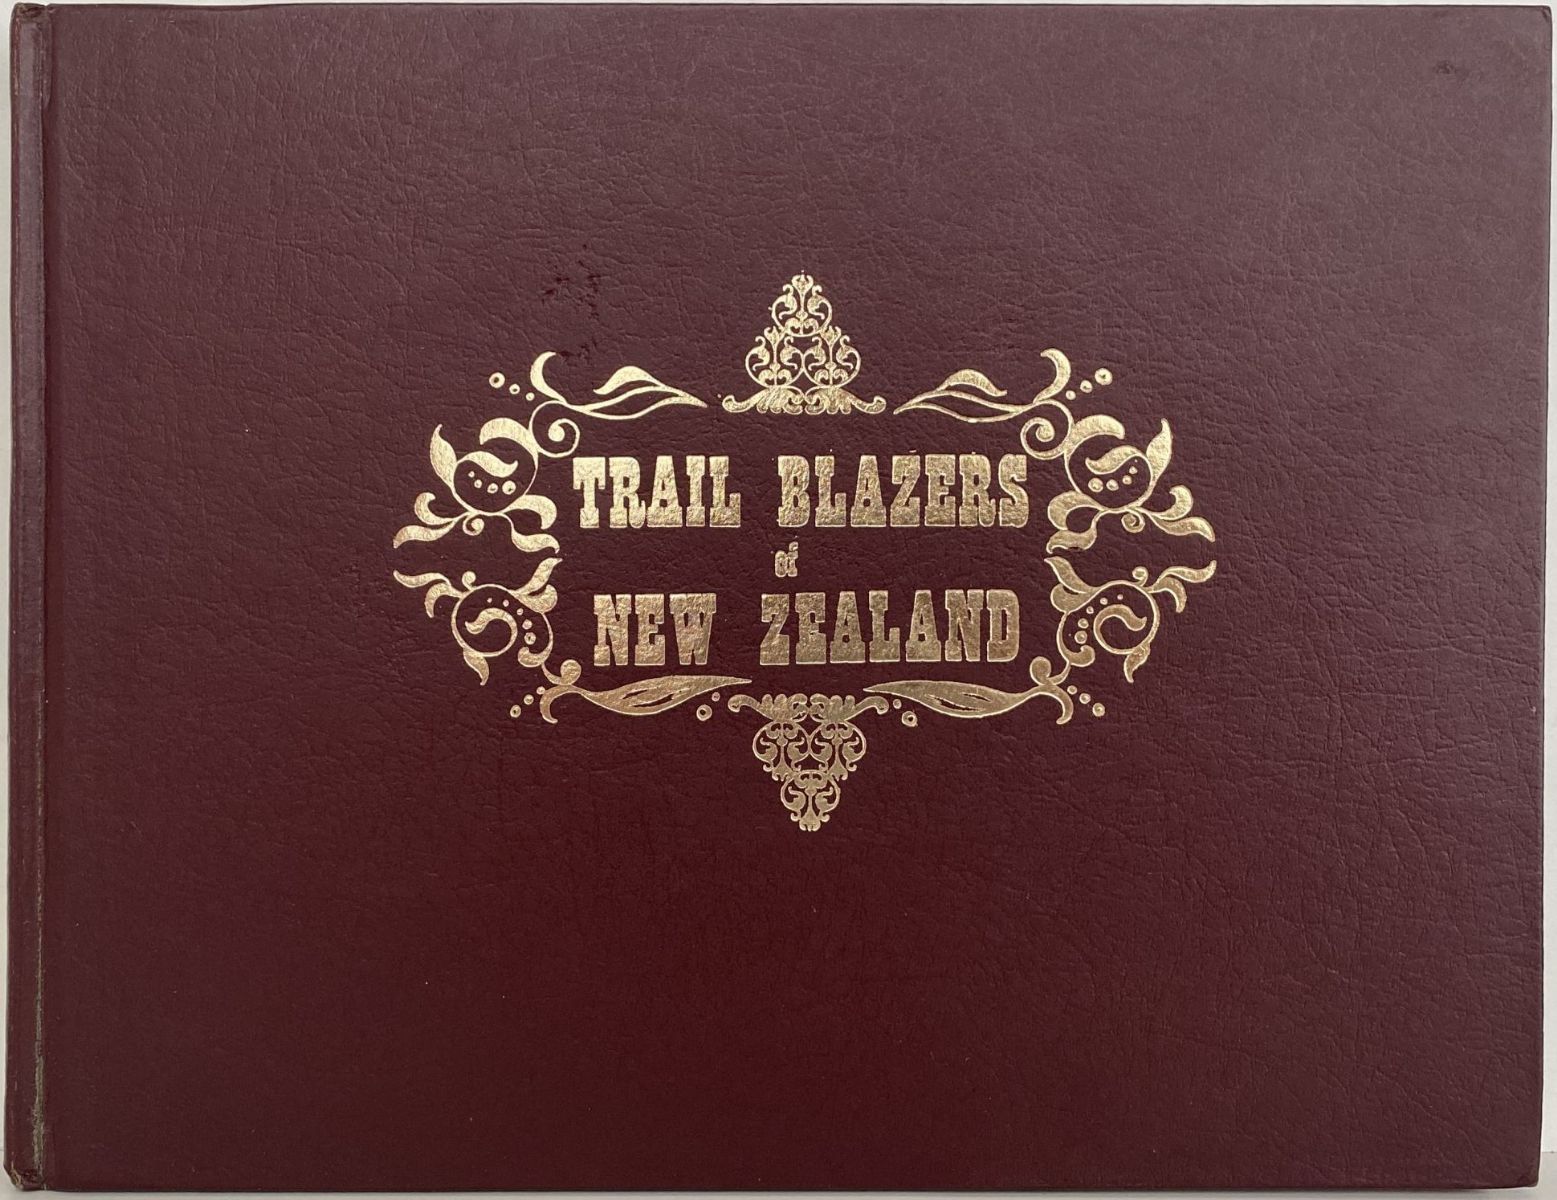 TRAIL BLAZERS OF NEW ZEALAND